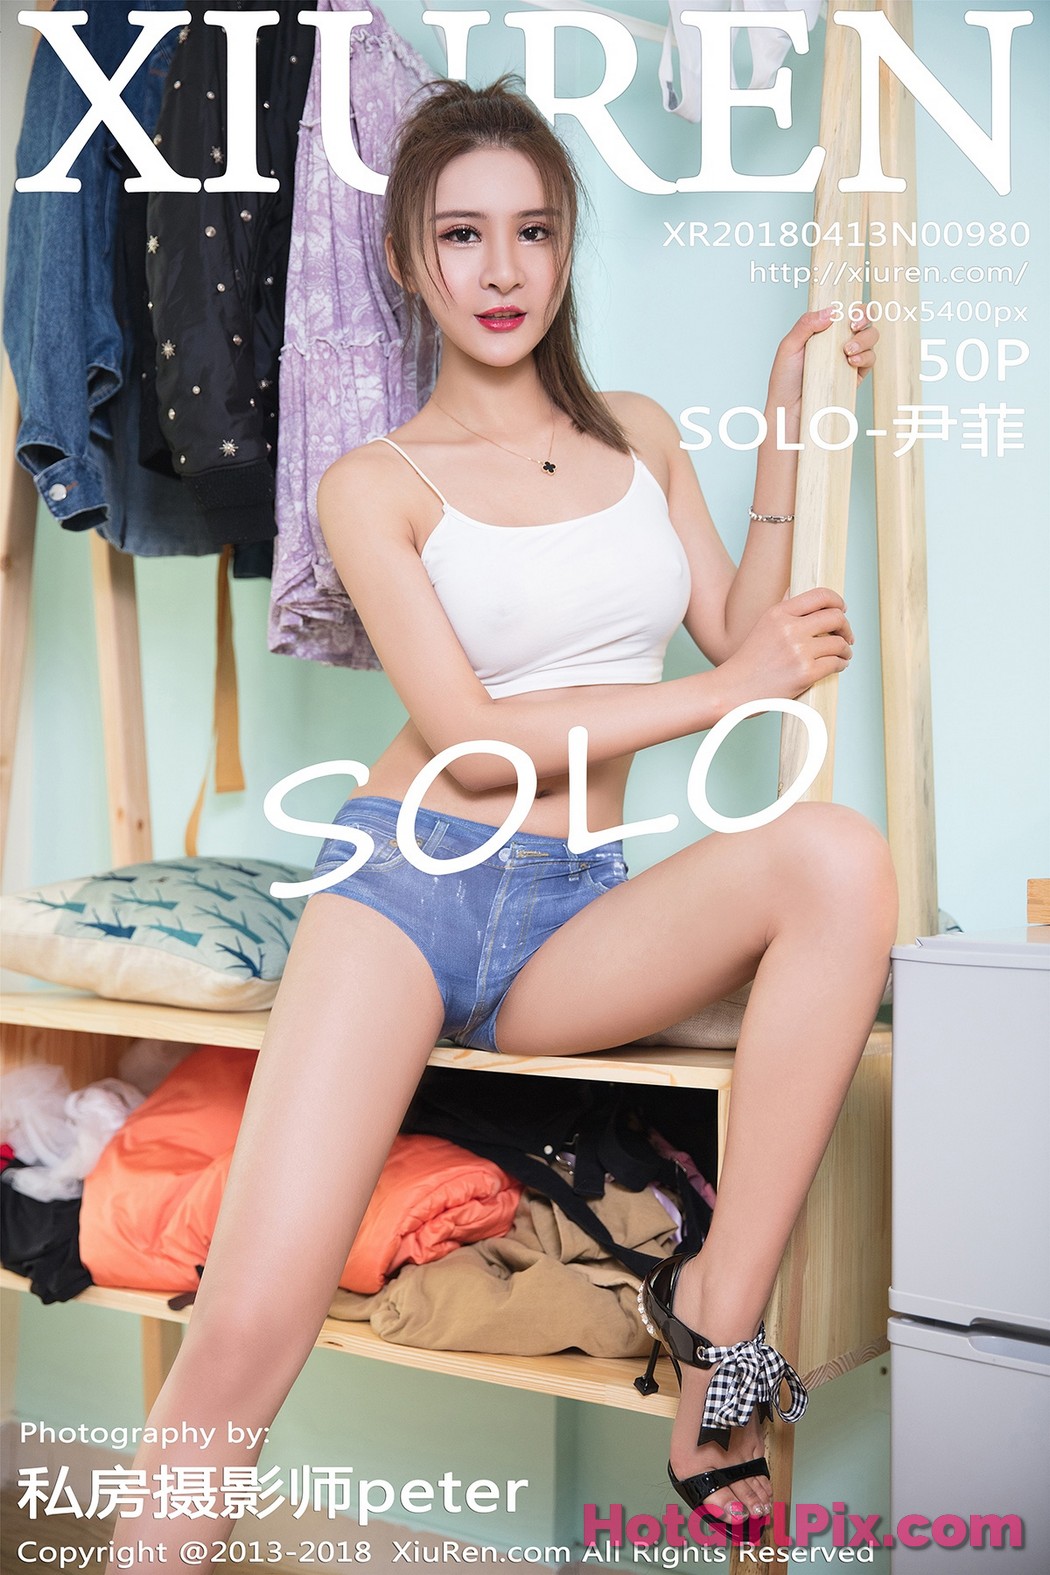 [XIUREN] No.980 SOLO-尹菲 Cover Photo